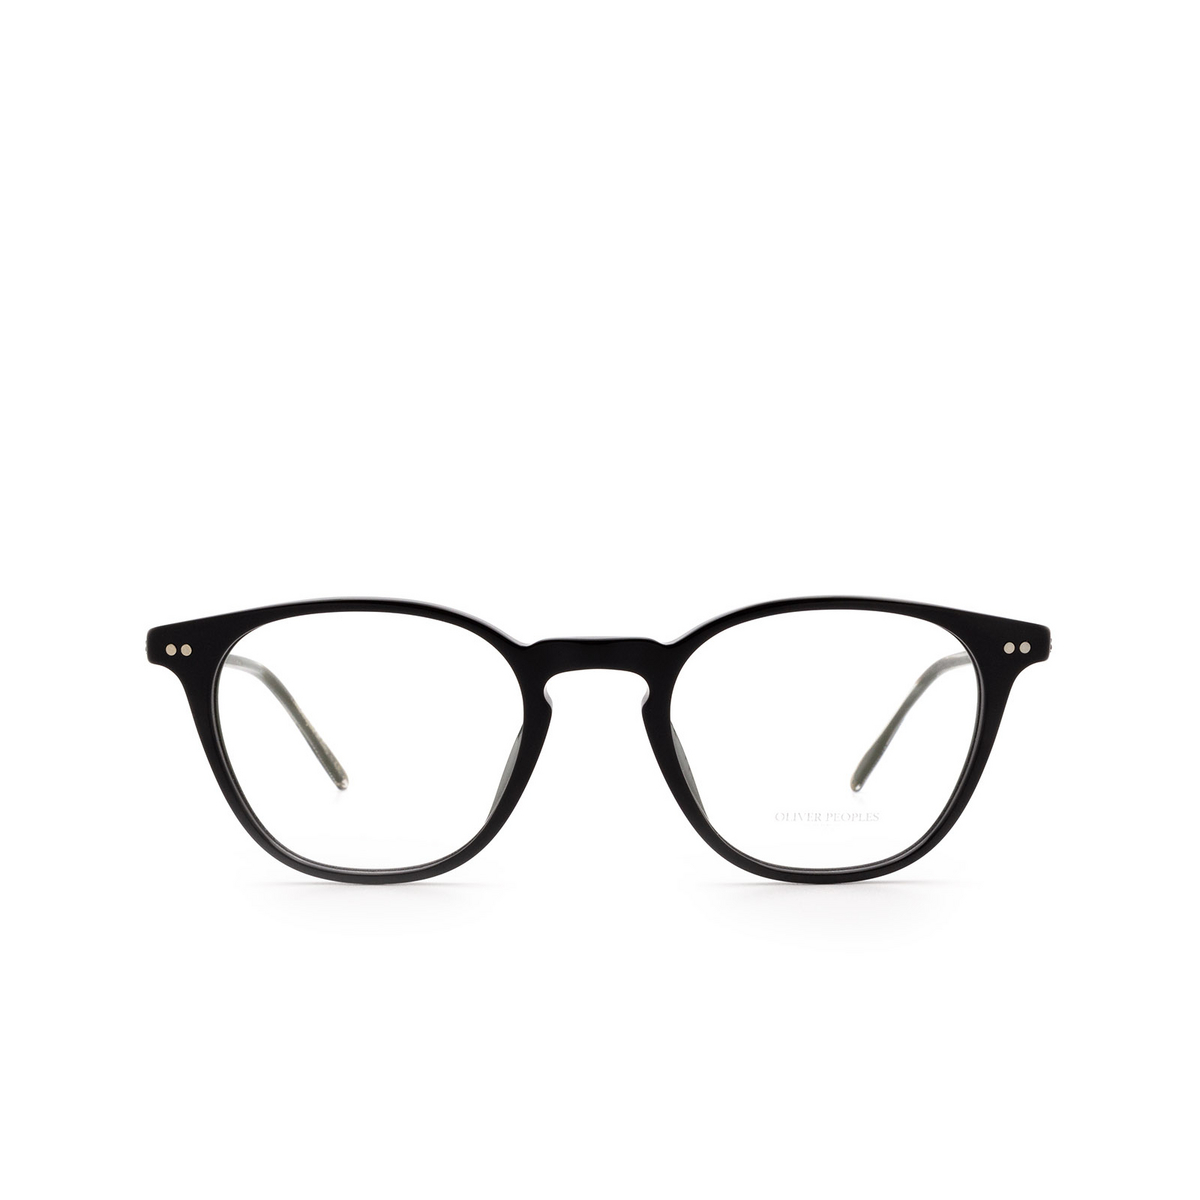 Oliver Peoples HANKS Eyeglasses 1005 Black - front view